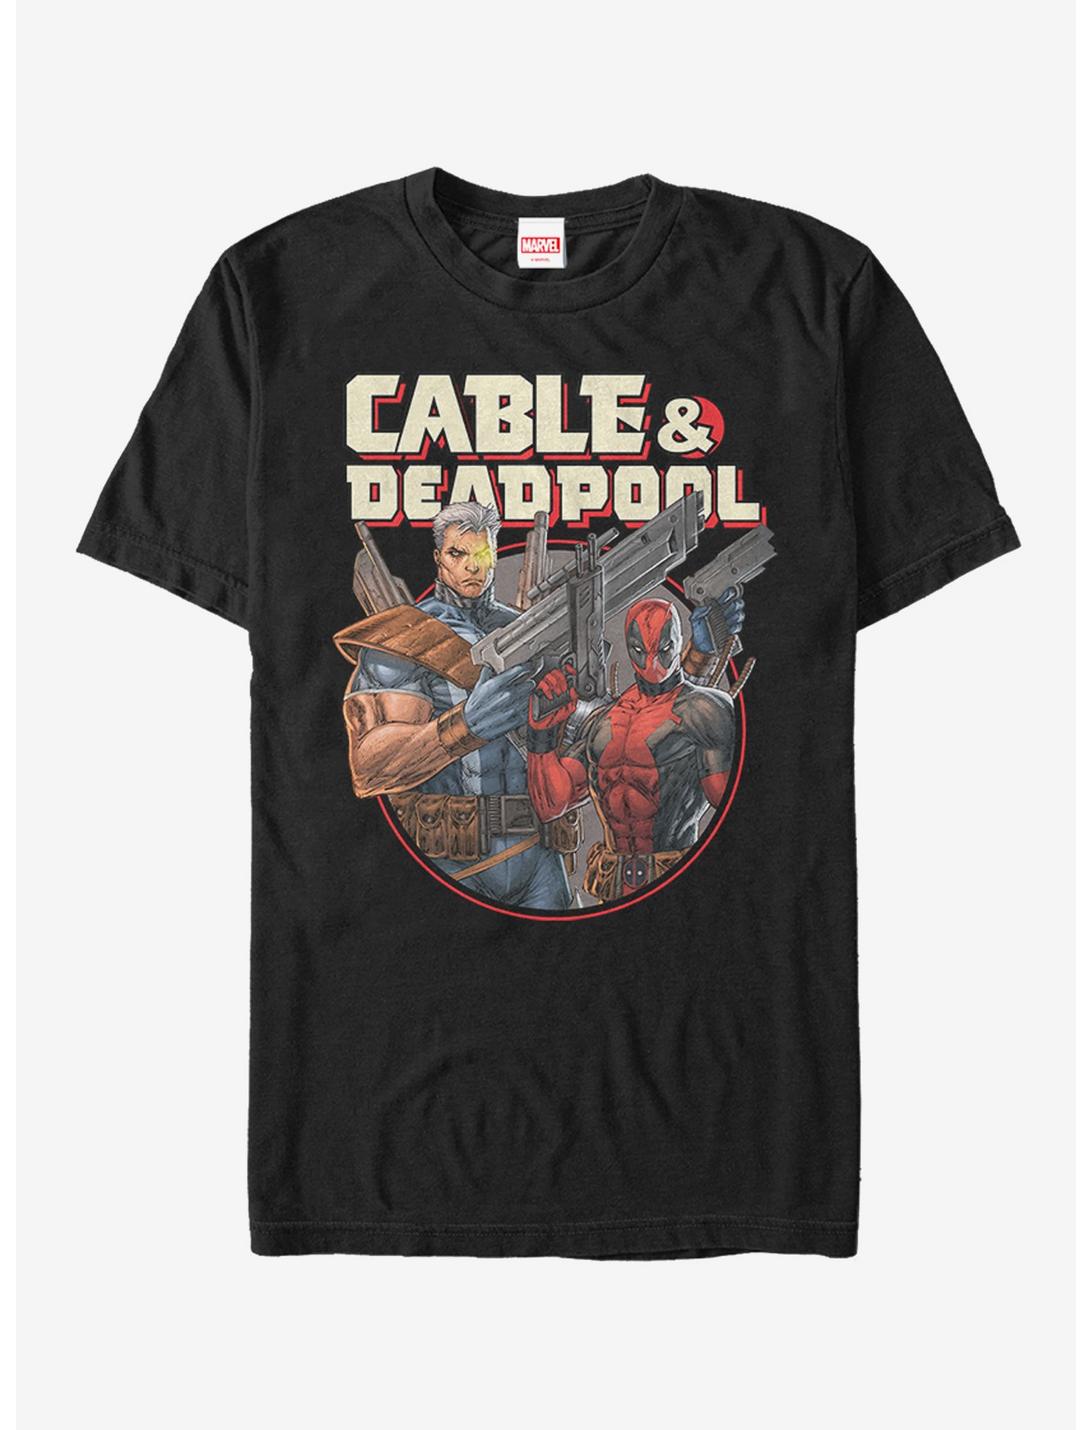 Marvel Deadpool Cable & Deadpool T-Shirt, BLACK, hi-res